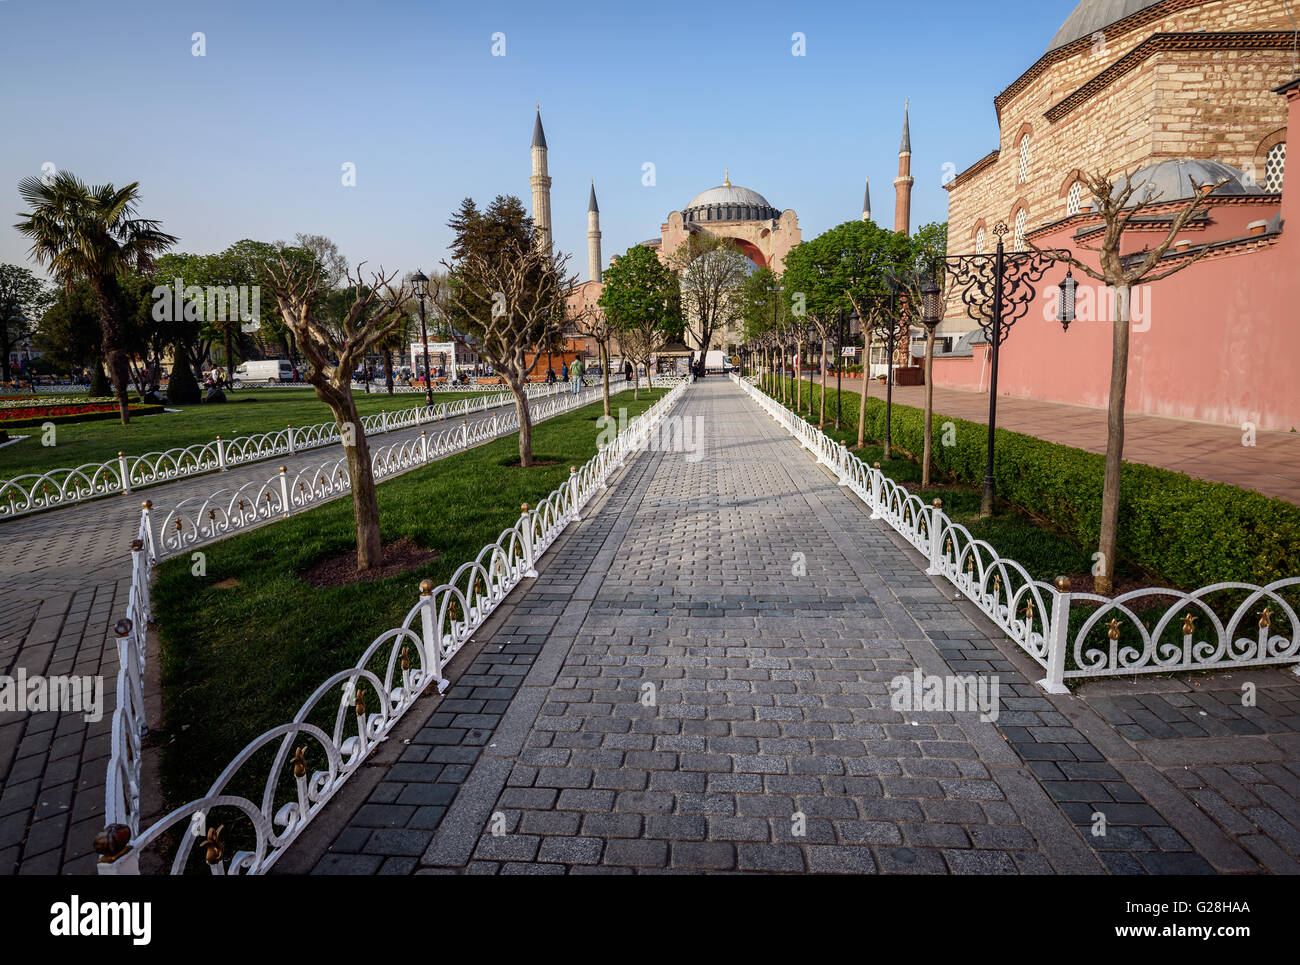 Hagia Sophia è un ex greci ortodossi cristiani basilica patriarcale, più tardi una moschea imperiale, e oggi sede di un museo di Istanbul, Foto Stock